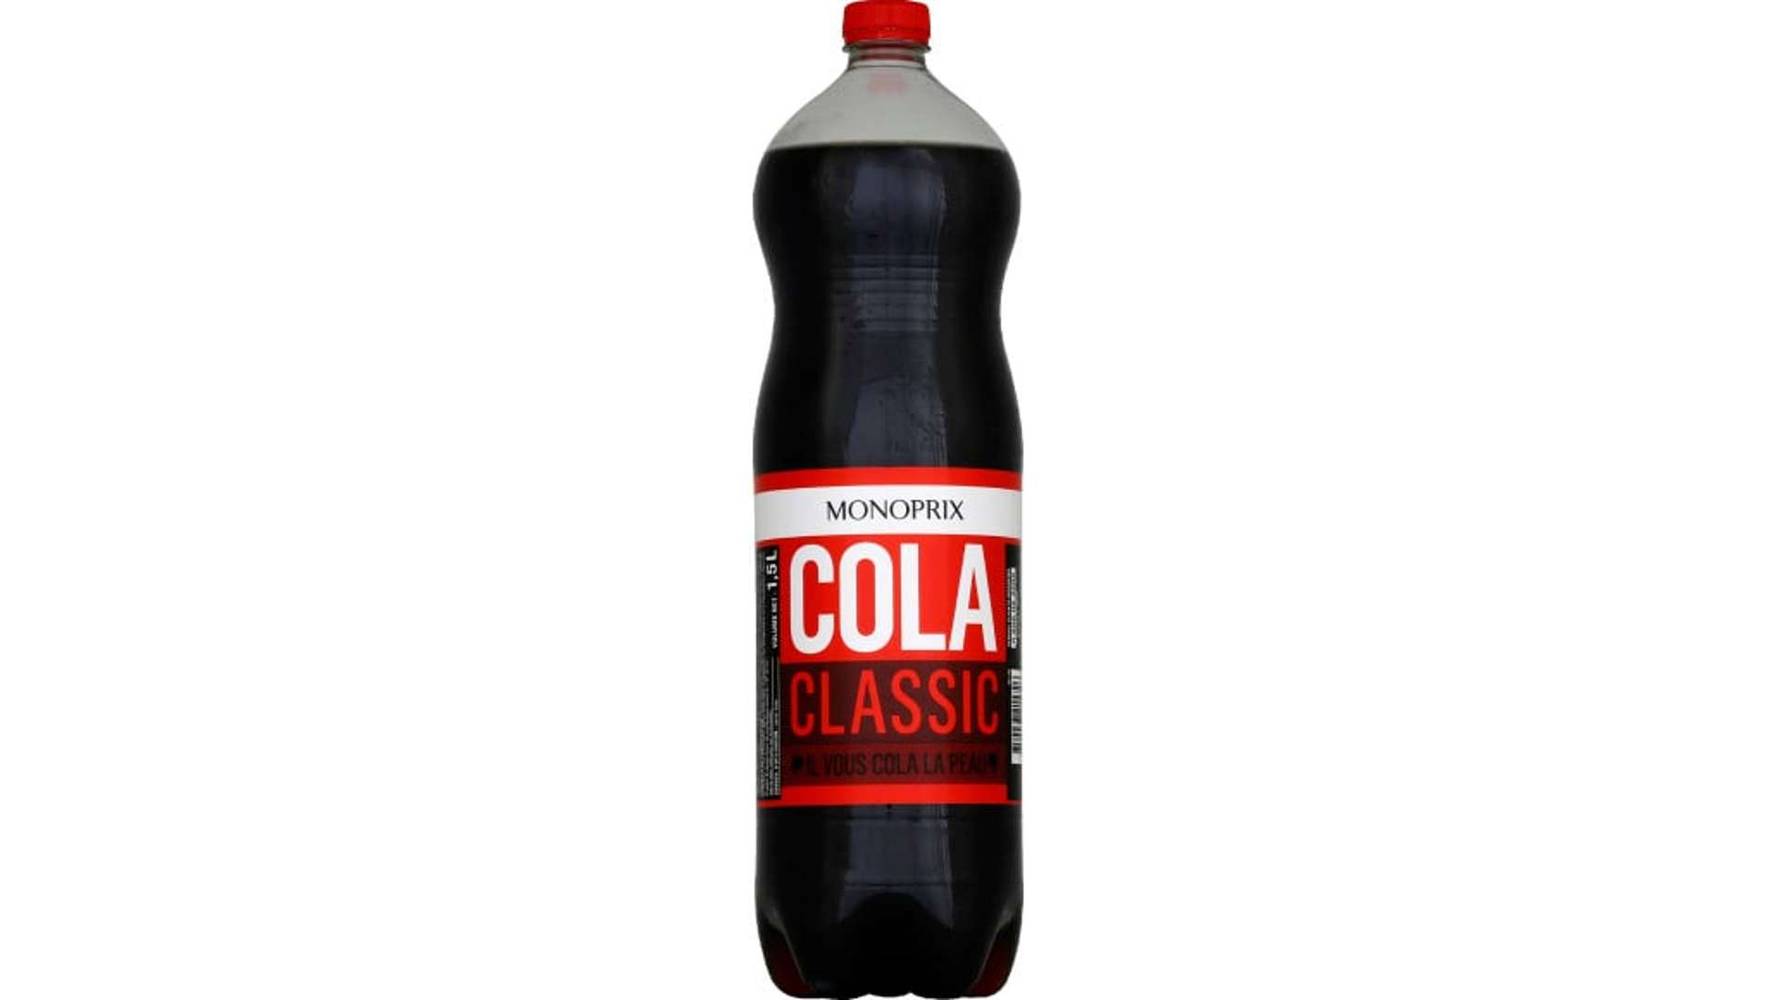 Monoprix - Cola classique (1.5 L)